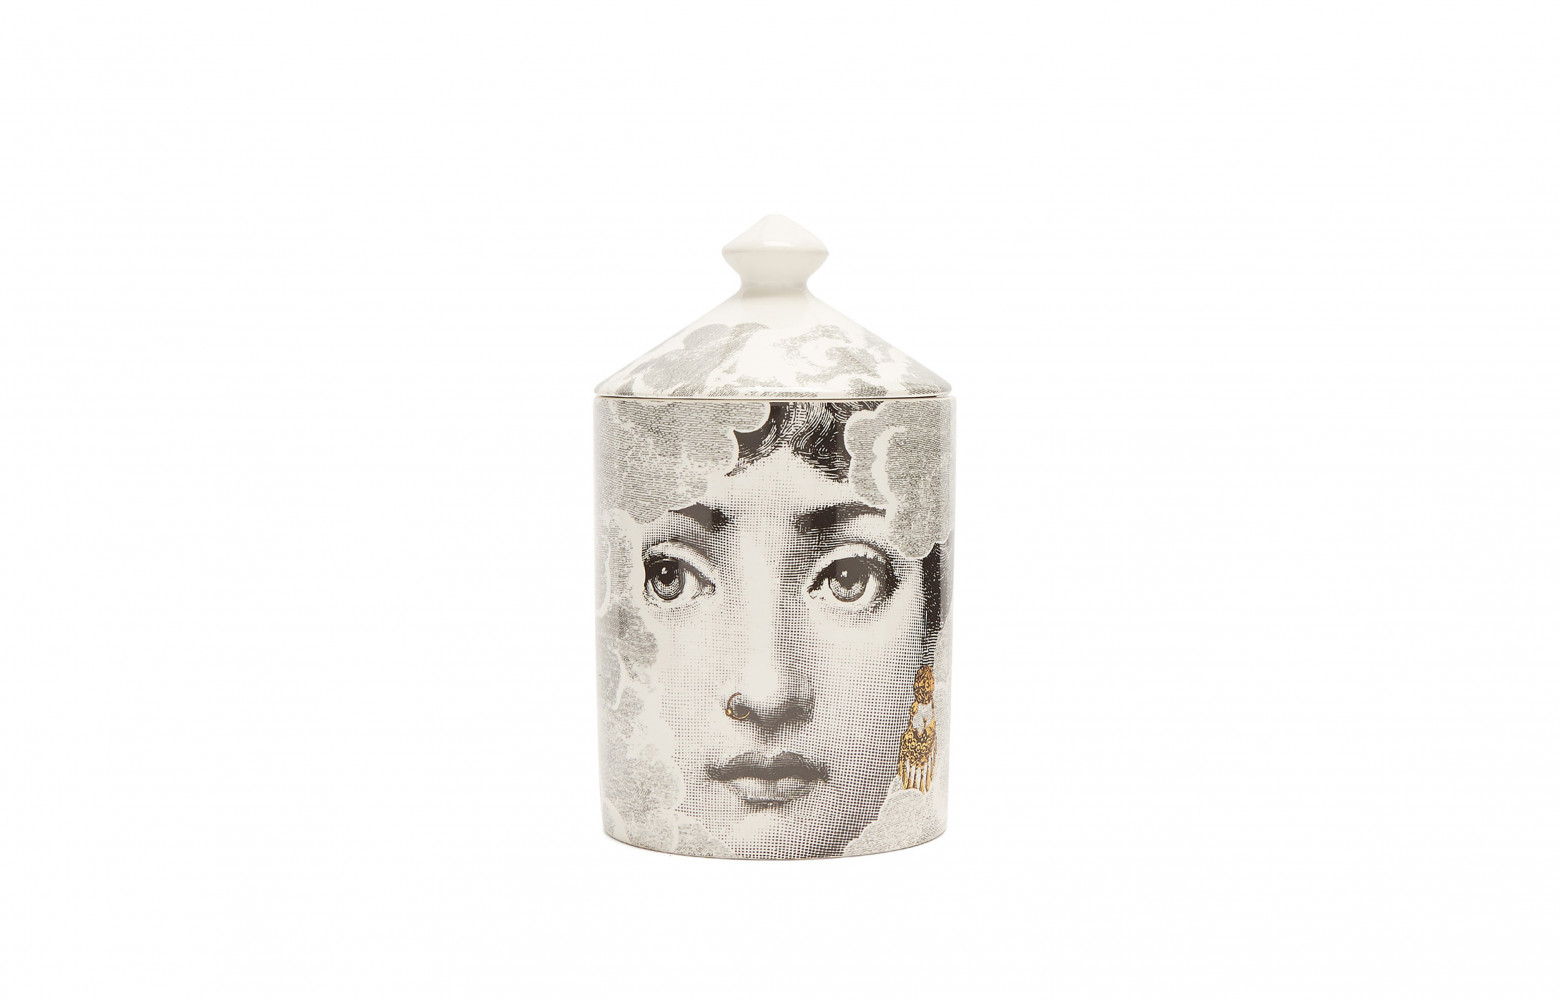  Bougie parfumée Nuvola Mistero, pot en céramique, 179 €. Fornasetti sur Matchesfashion.com